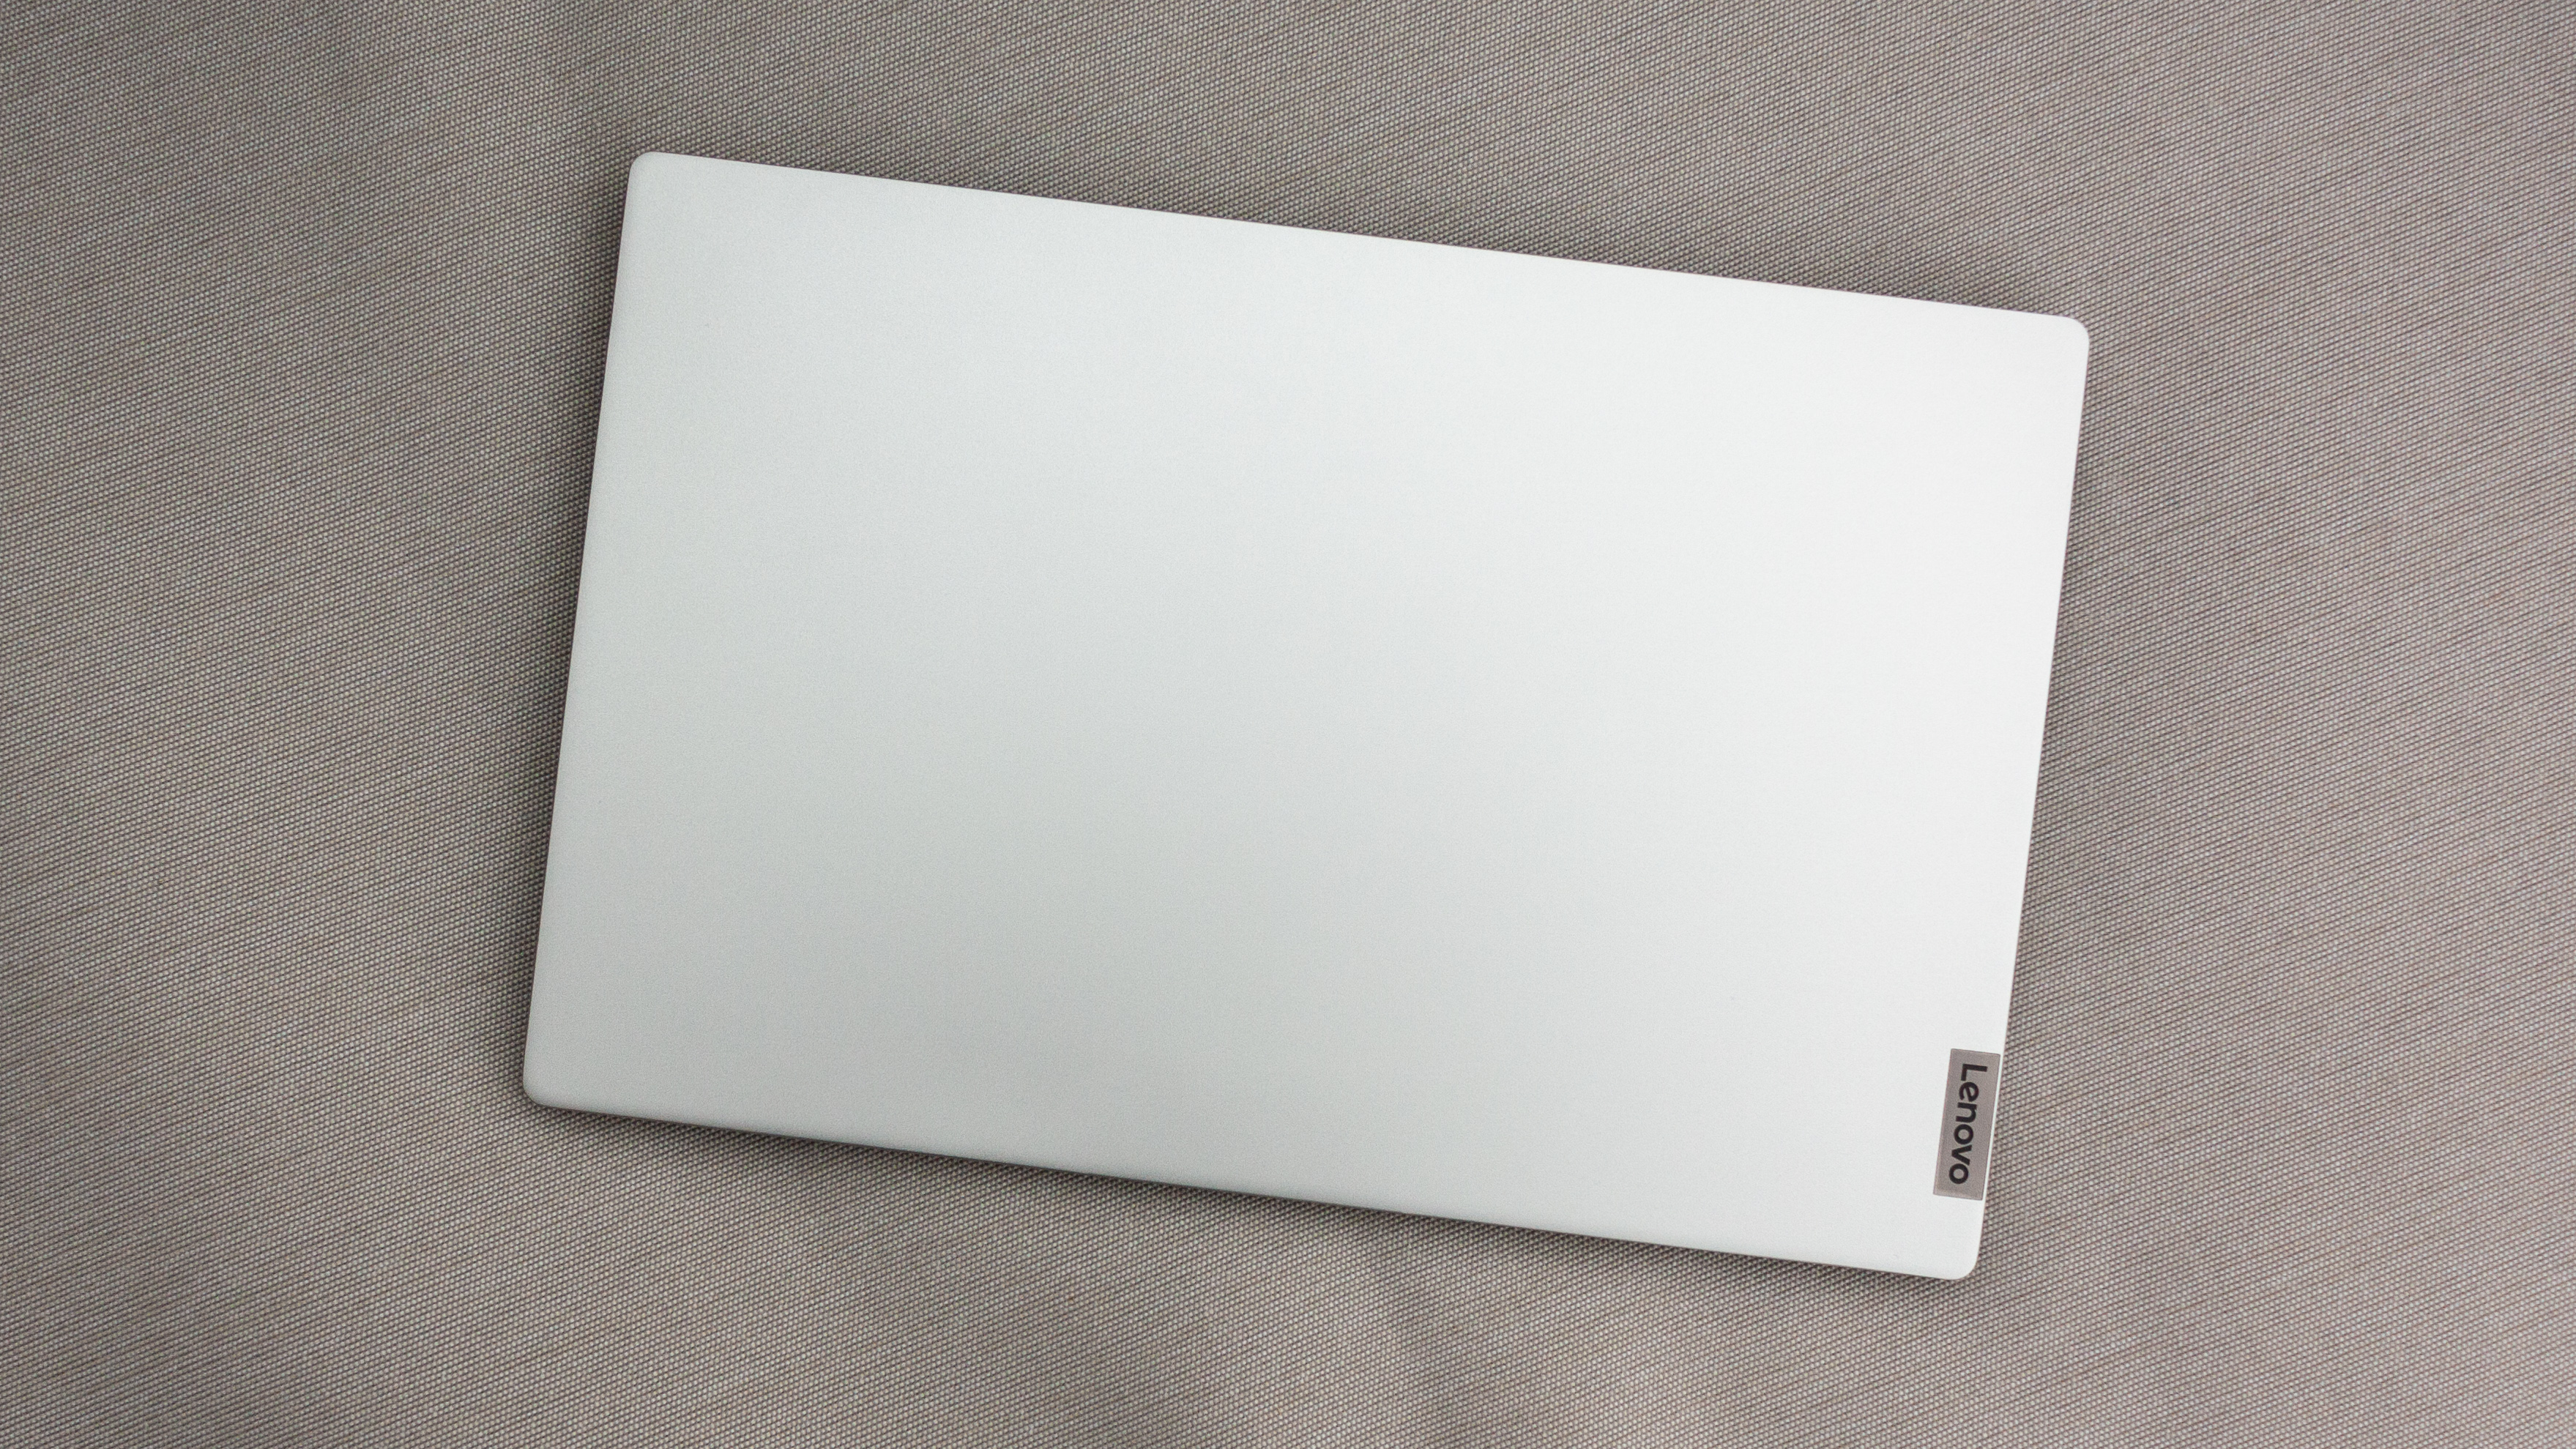 Lenovo IdeaPad 5 14-inch